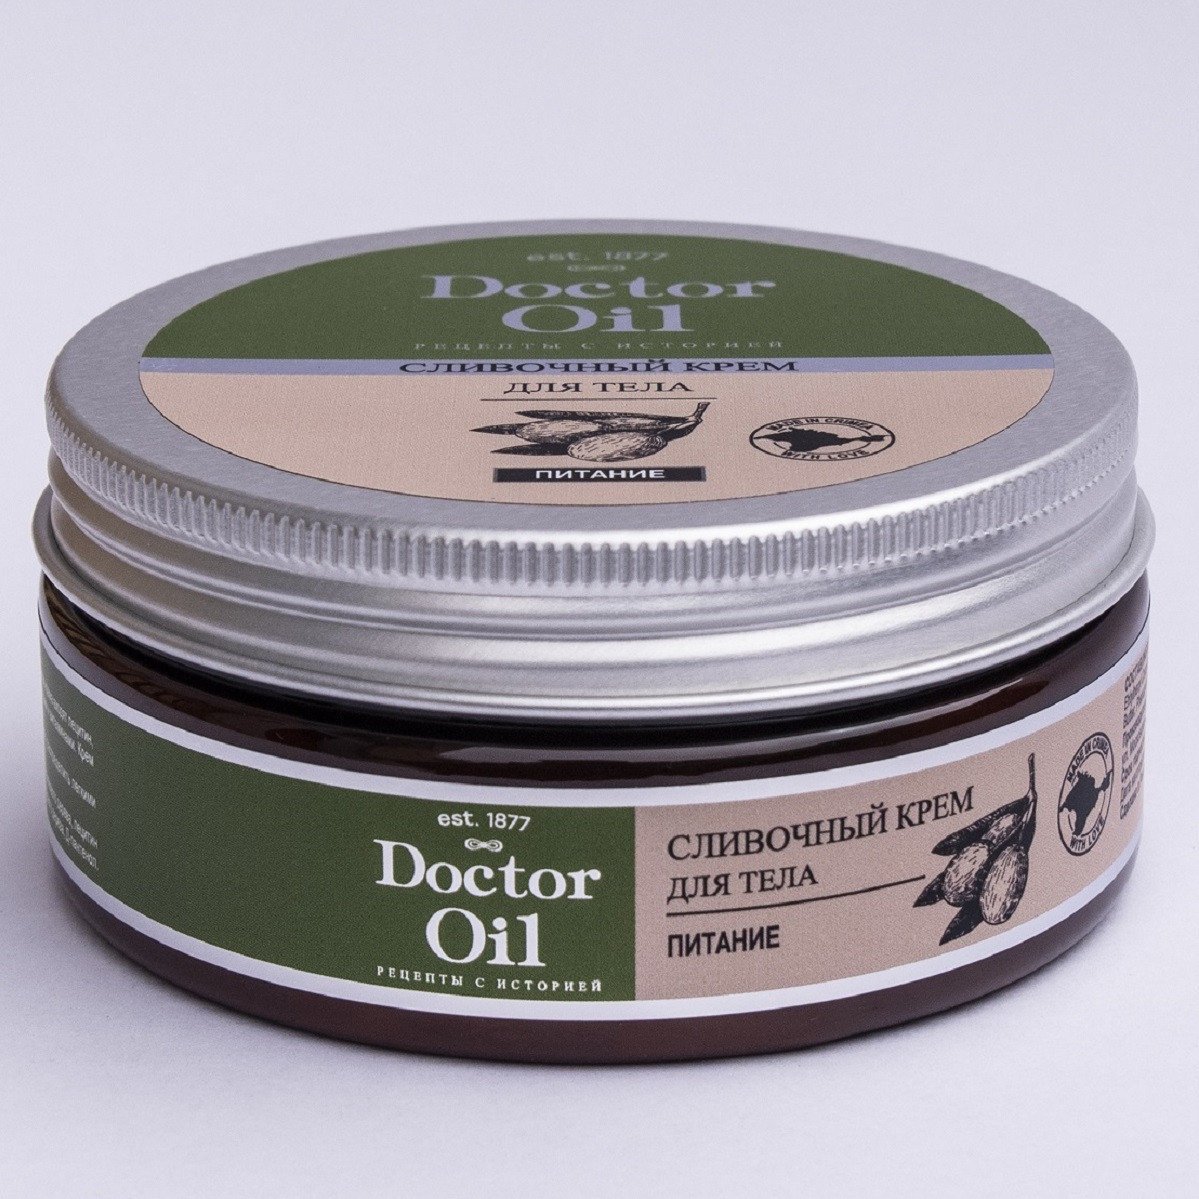 Doctor Oil Крем для тела сливочный «Питание» с маслом сладкого миндаля и маслом оливы